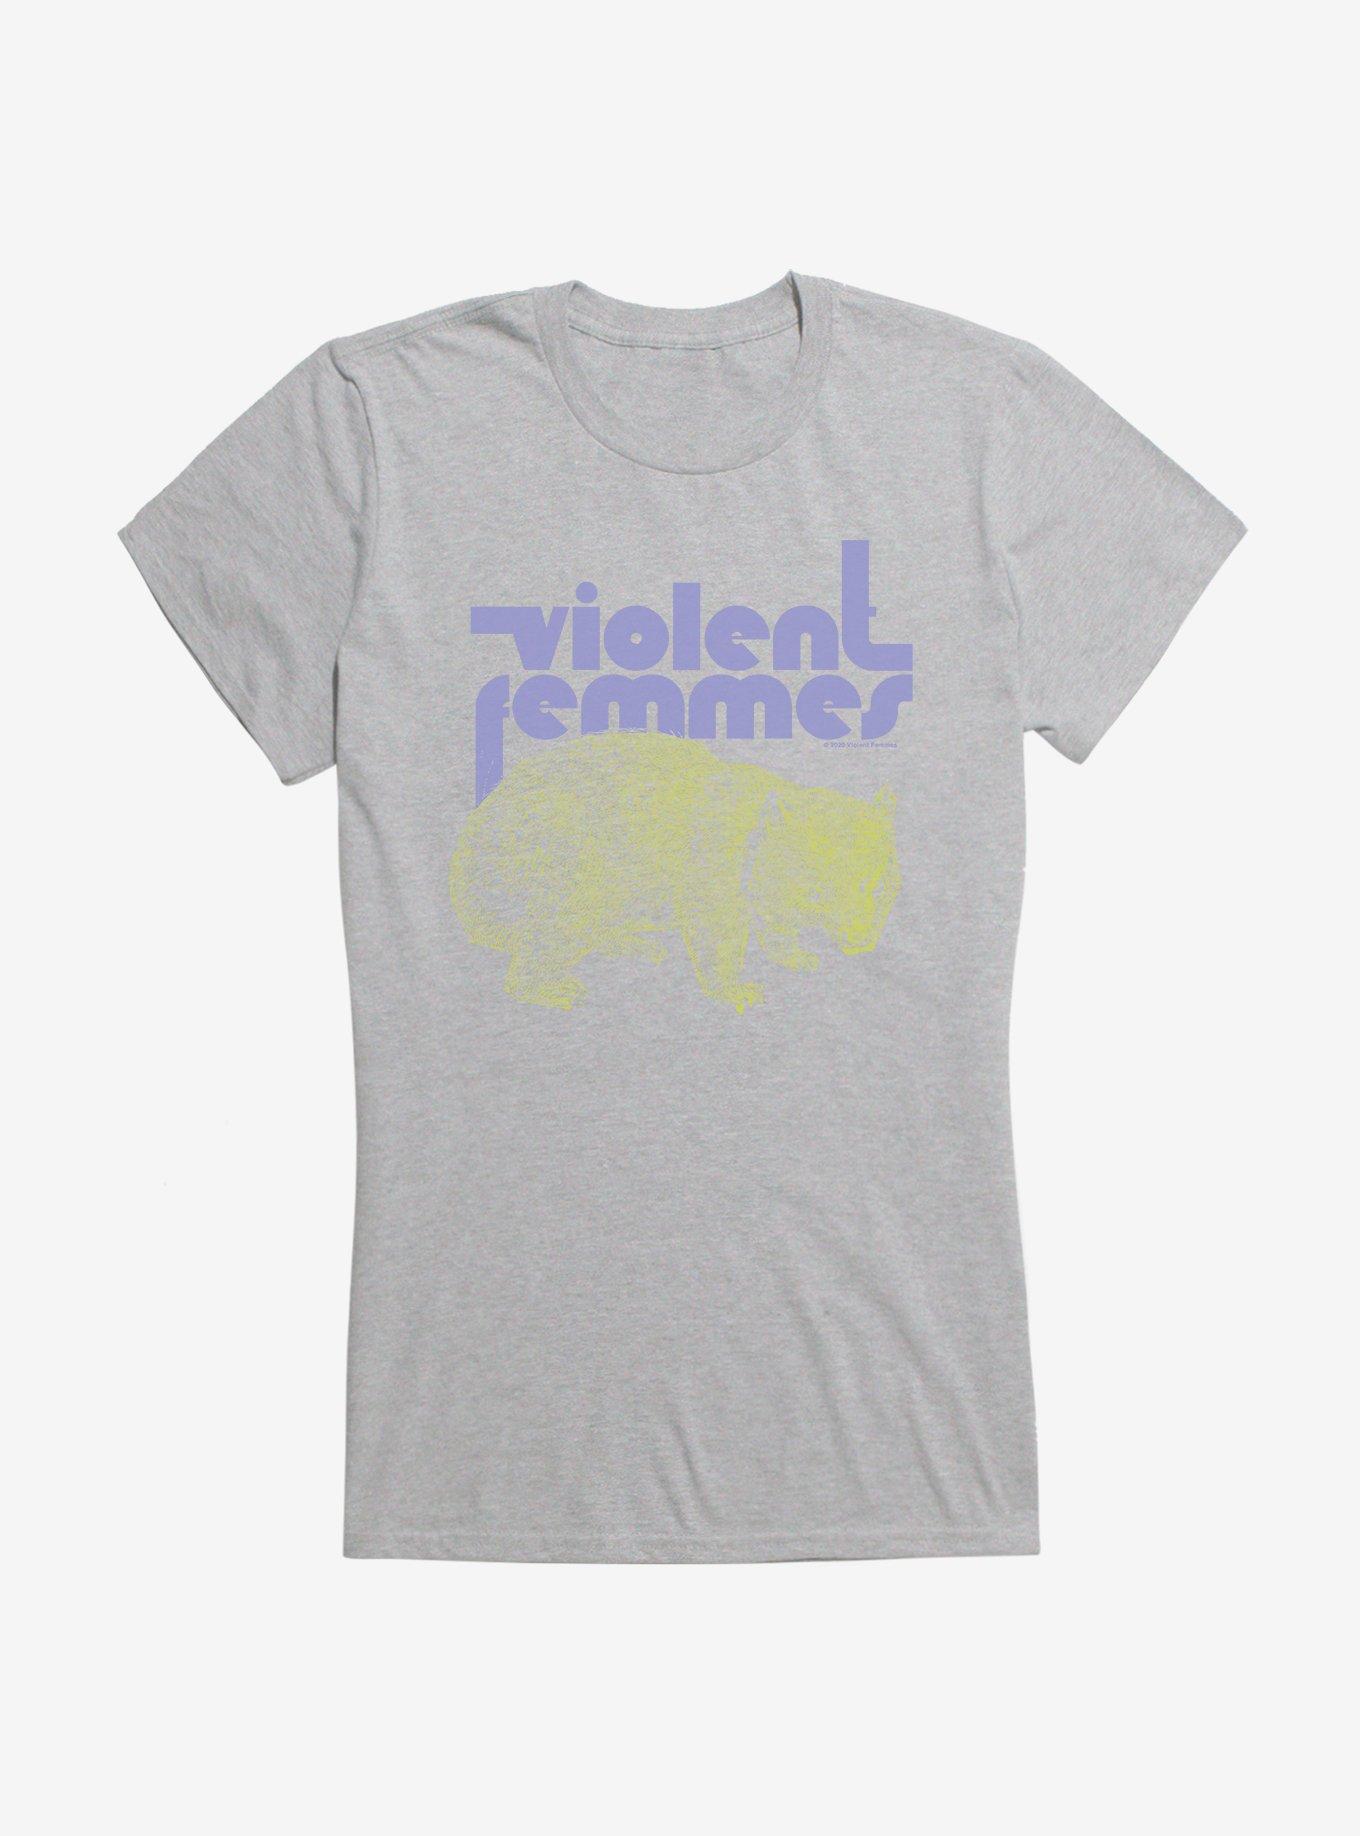 Violent Femmes Wombat Girls T-Shirt, , hi-res